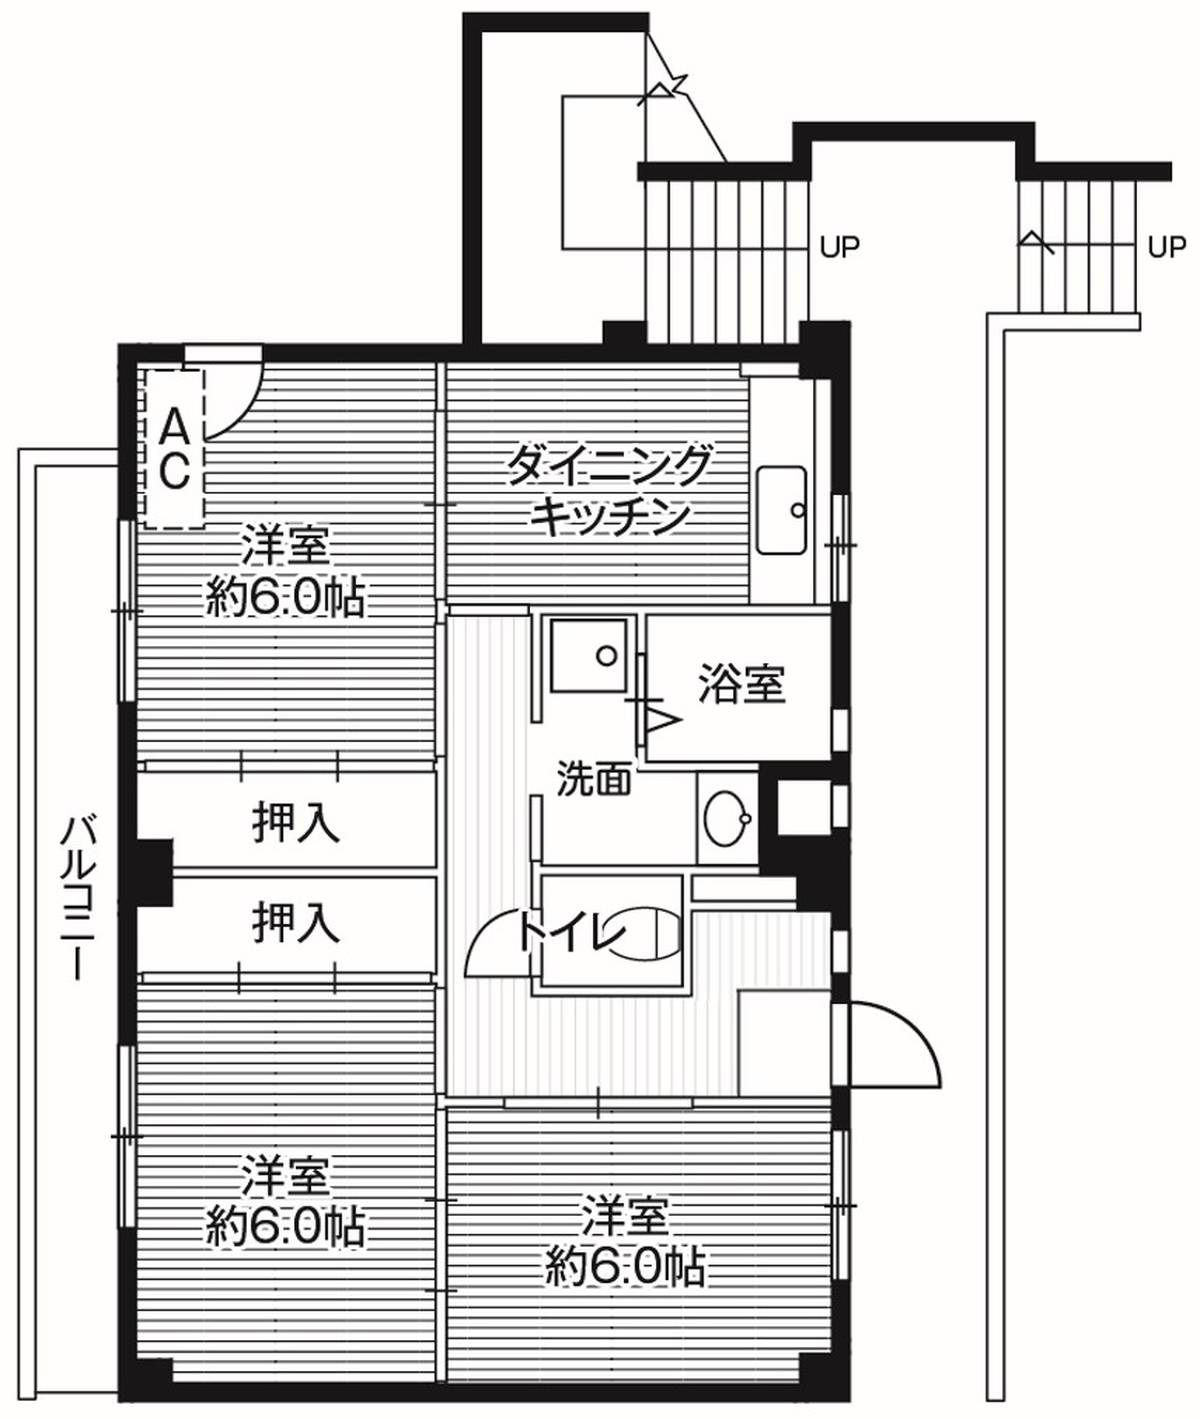 Sơ đồ phòng 3DK của Village House Gouchi ở Akishima-shi